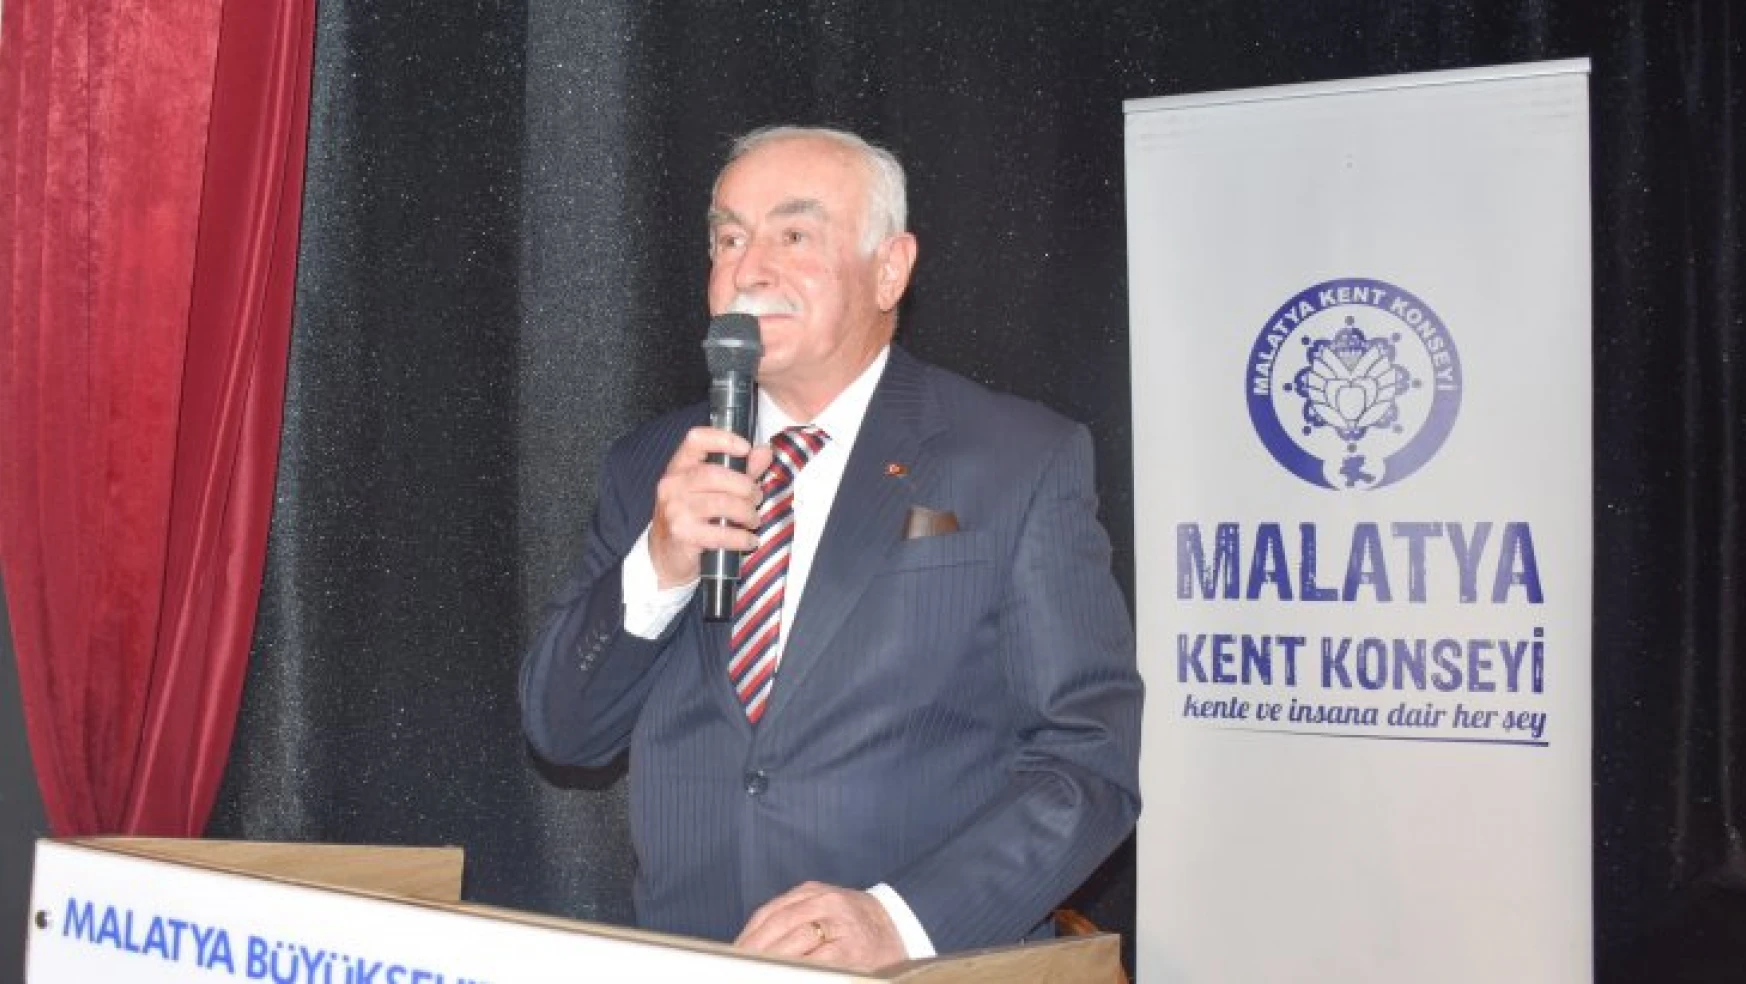 Malatya Kent Konseyi Niyazi Mısri'yi Anlattı